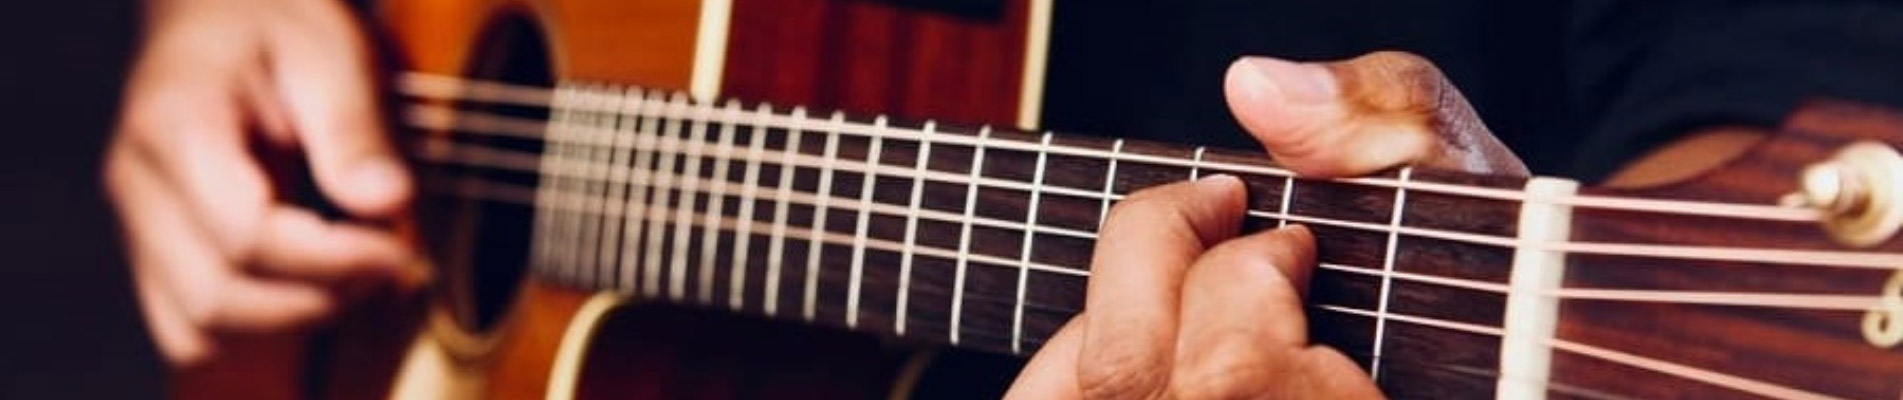 technique guitare acoustique